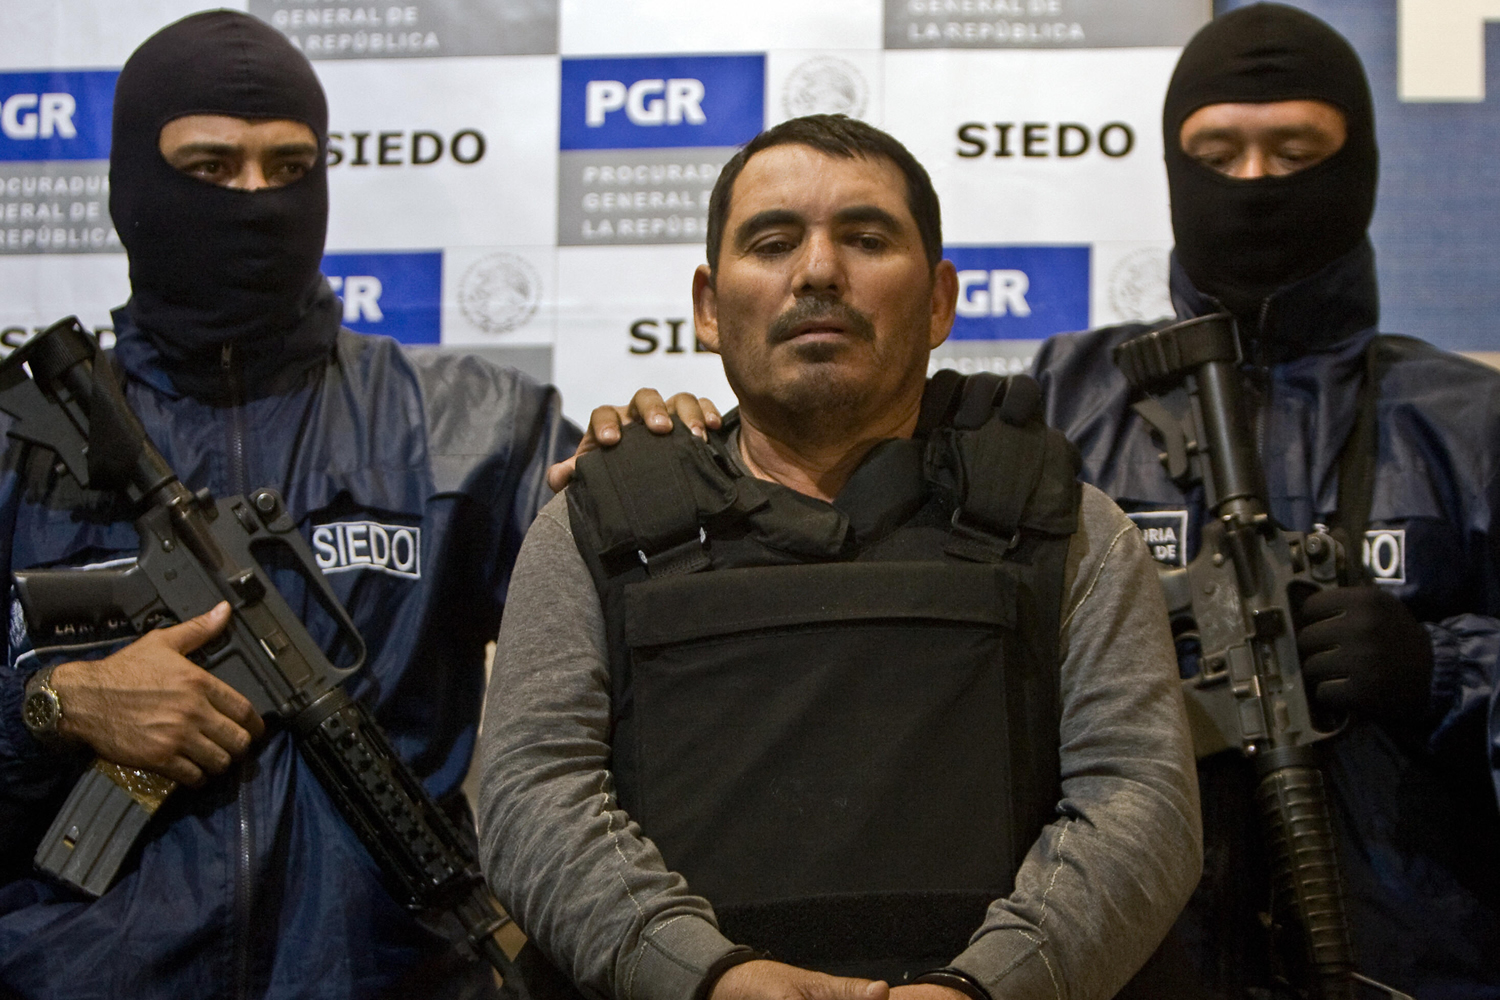 El mexicano que disolvió en ácido a 300 personas por encargo de narcotráficantes